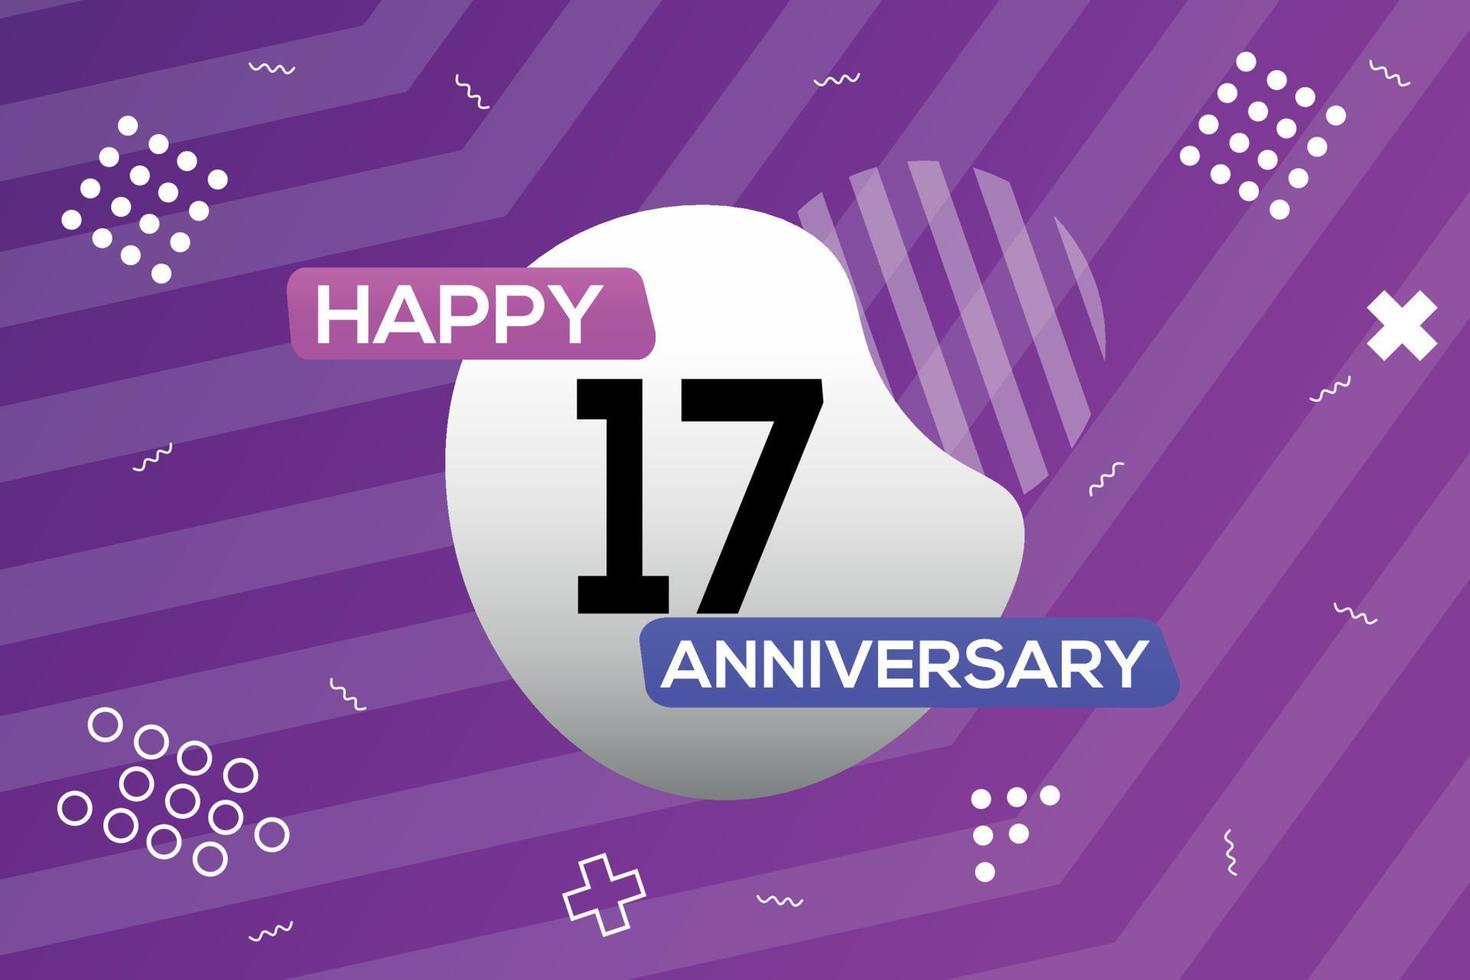 17:e år årsdag logotyp vektor design årsdag firande med färgrik geometrisk former abstrakt illustration